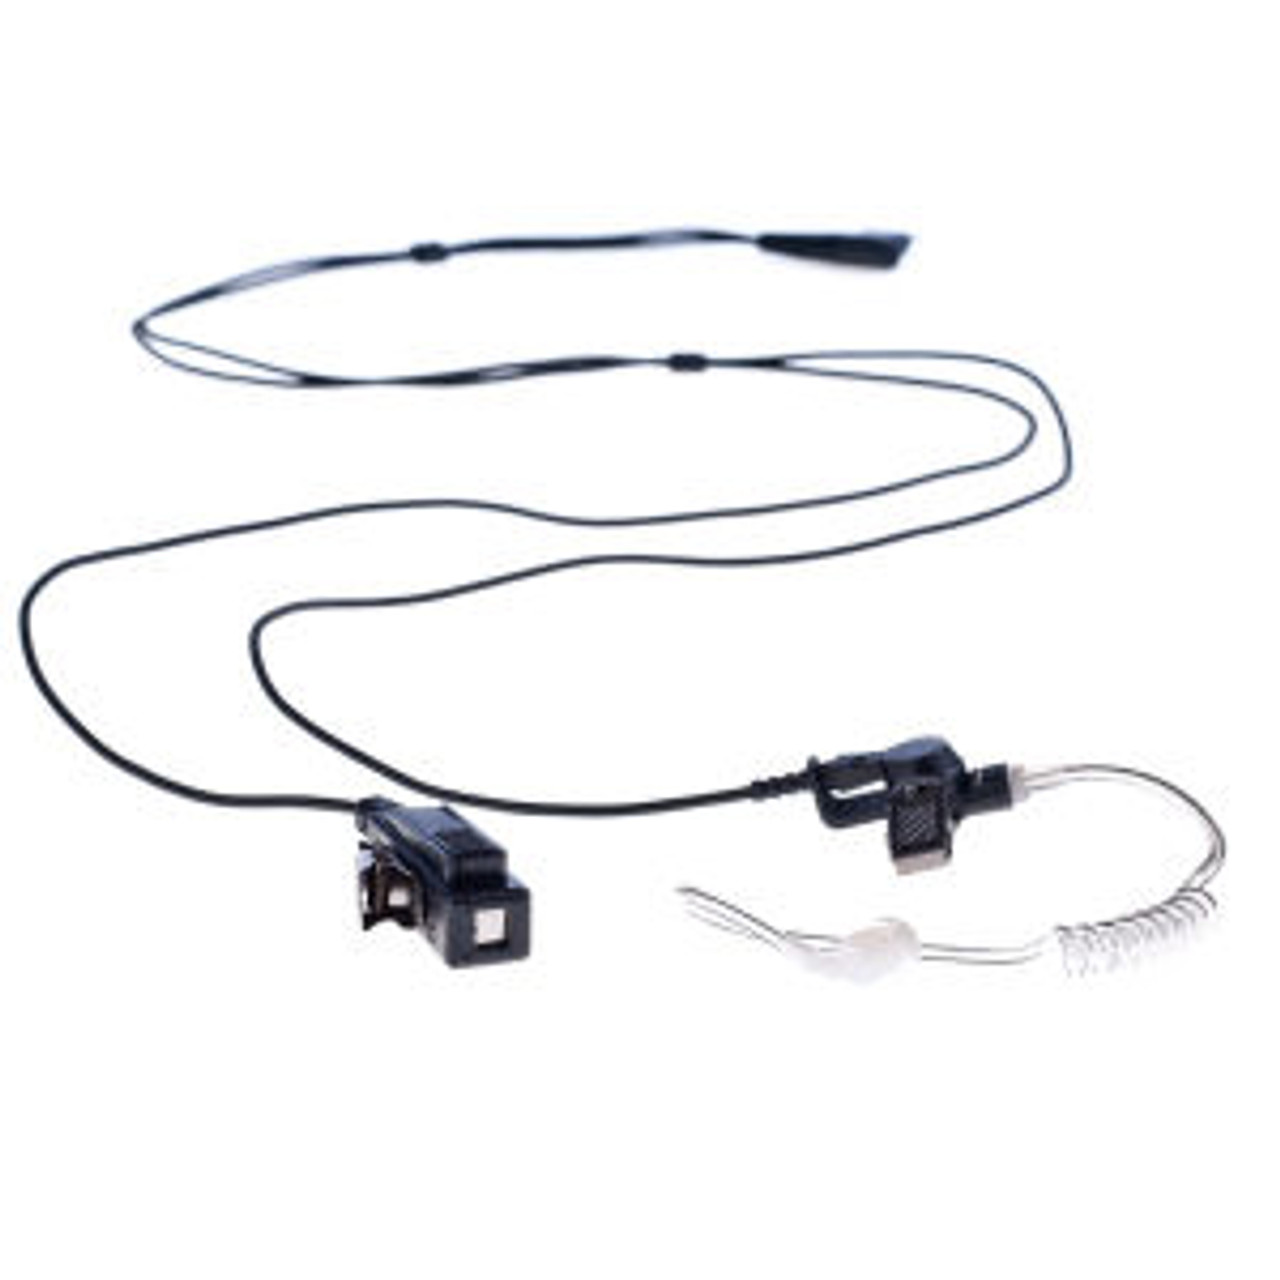 M/A-Com P7370 2-Wire Surveillance Kit